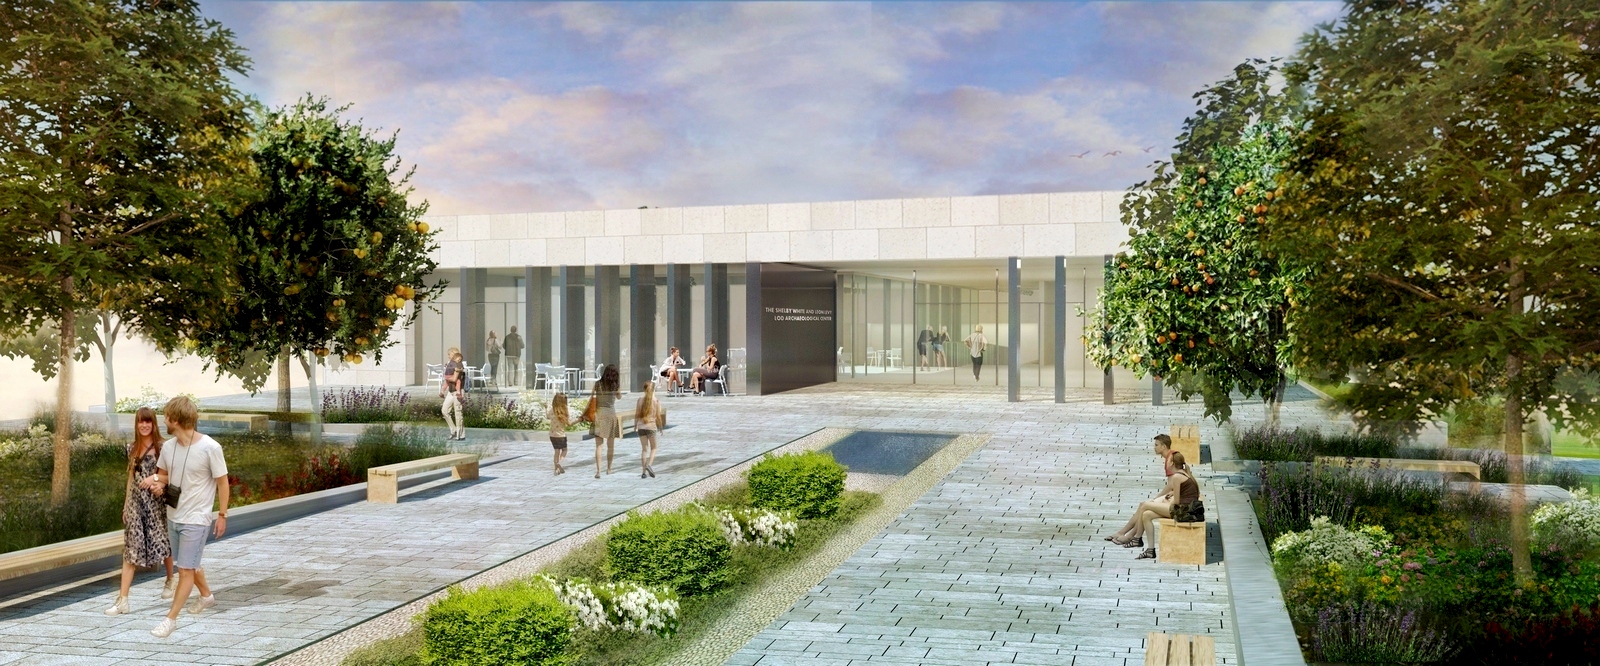 פותחים: בעוד כחצי שנה ייפתח מוזיאון הפסיפס הנדיר בלוד